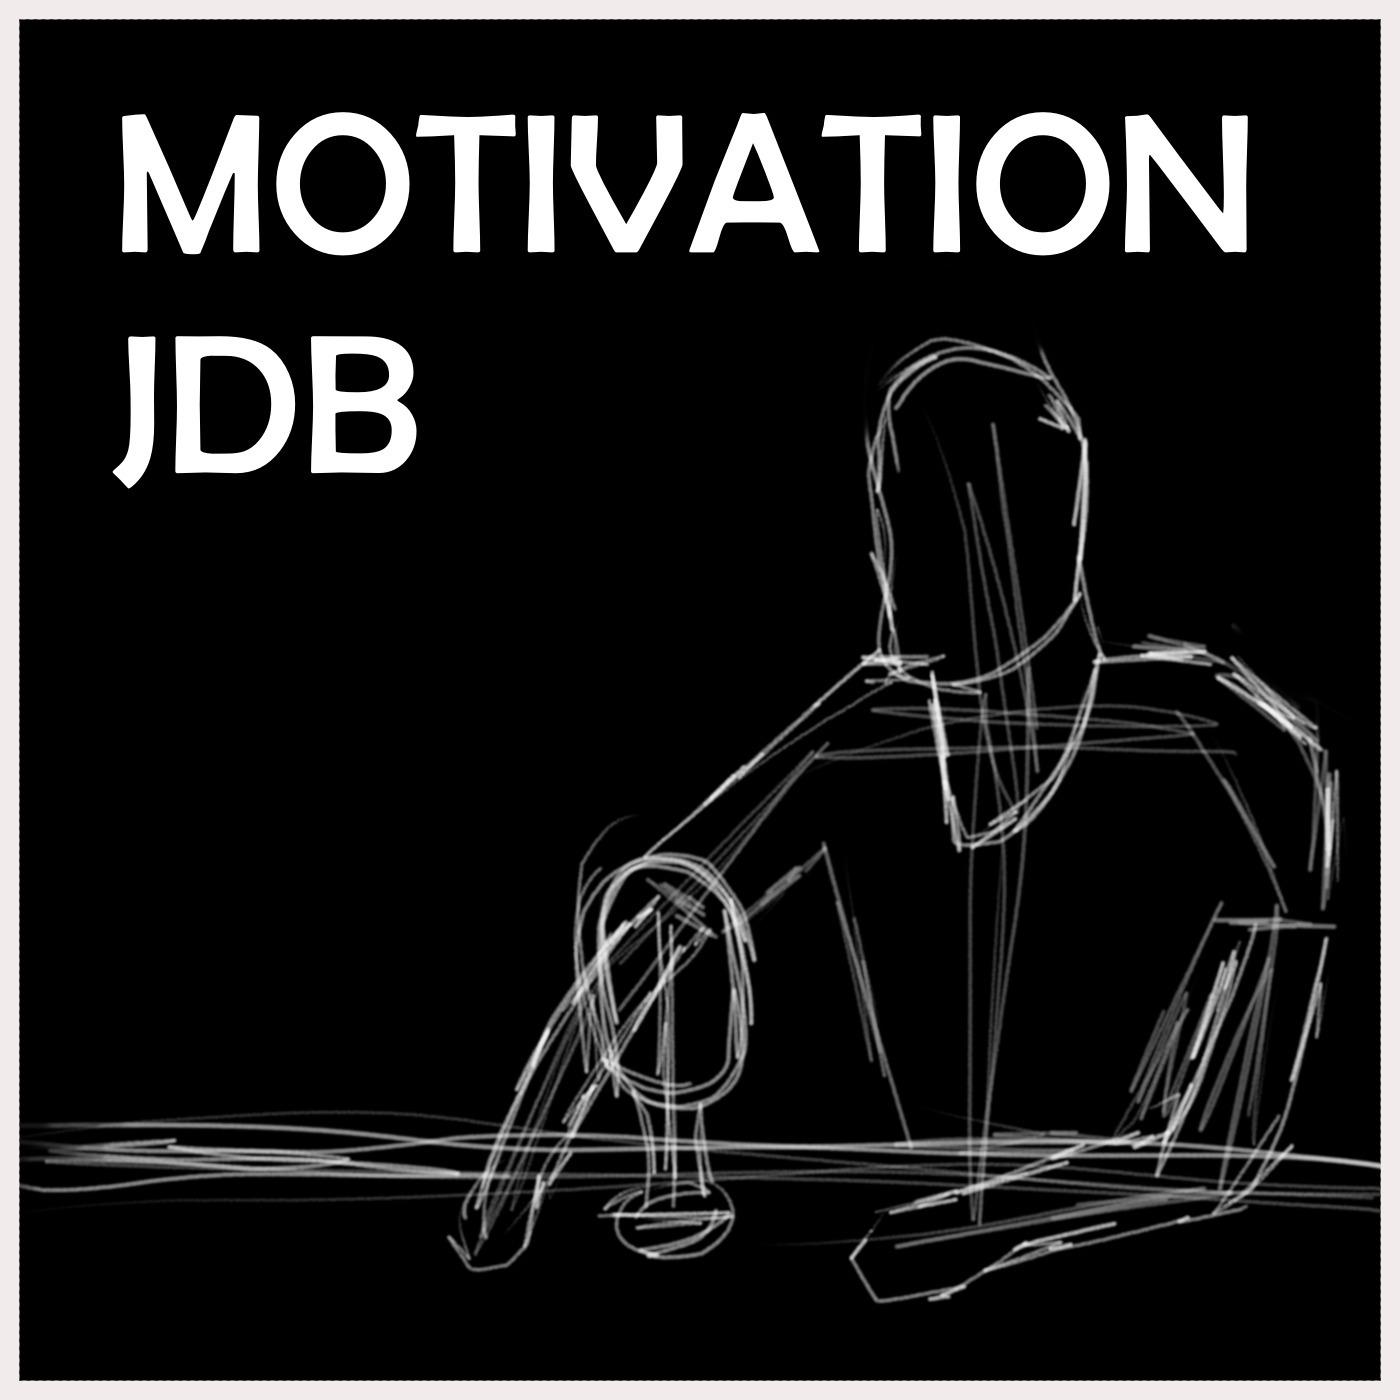 JDB | MOTIVATION